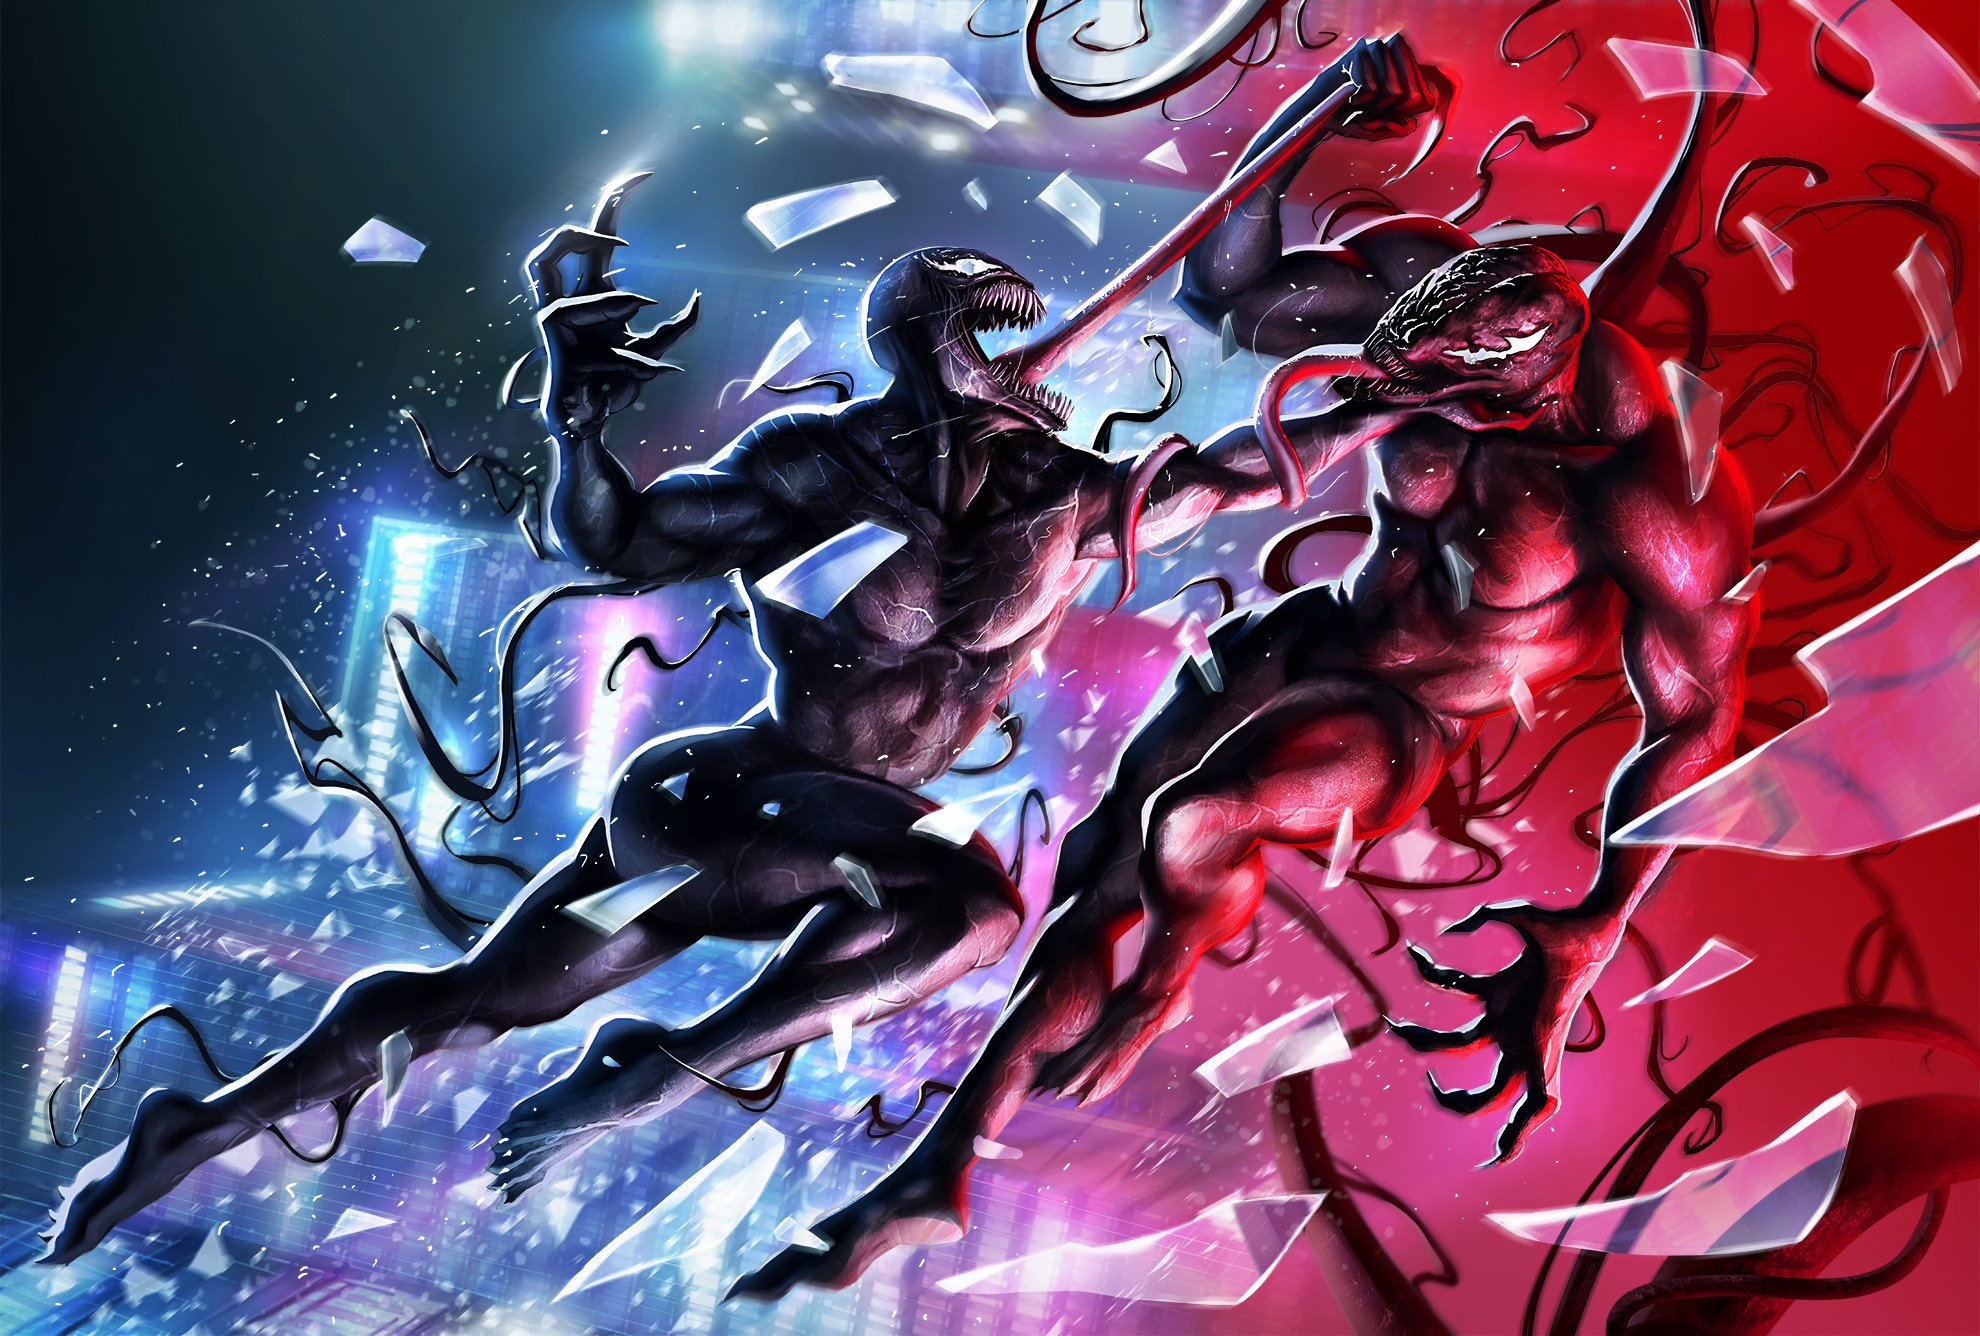 Venom Vs Riot Illustration, HD Superheroes, 4k Wallpaper